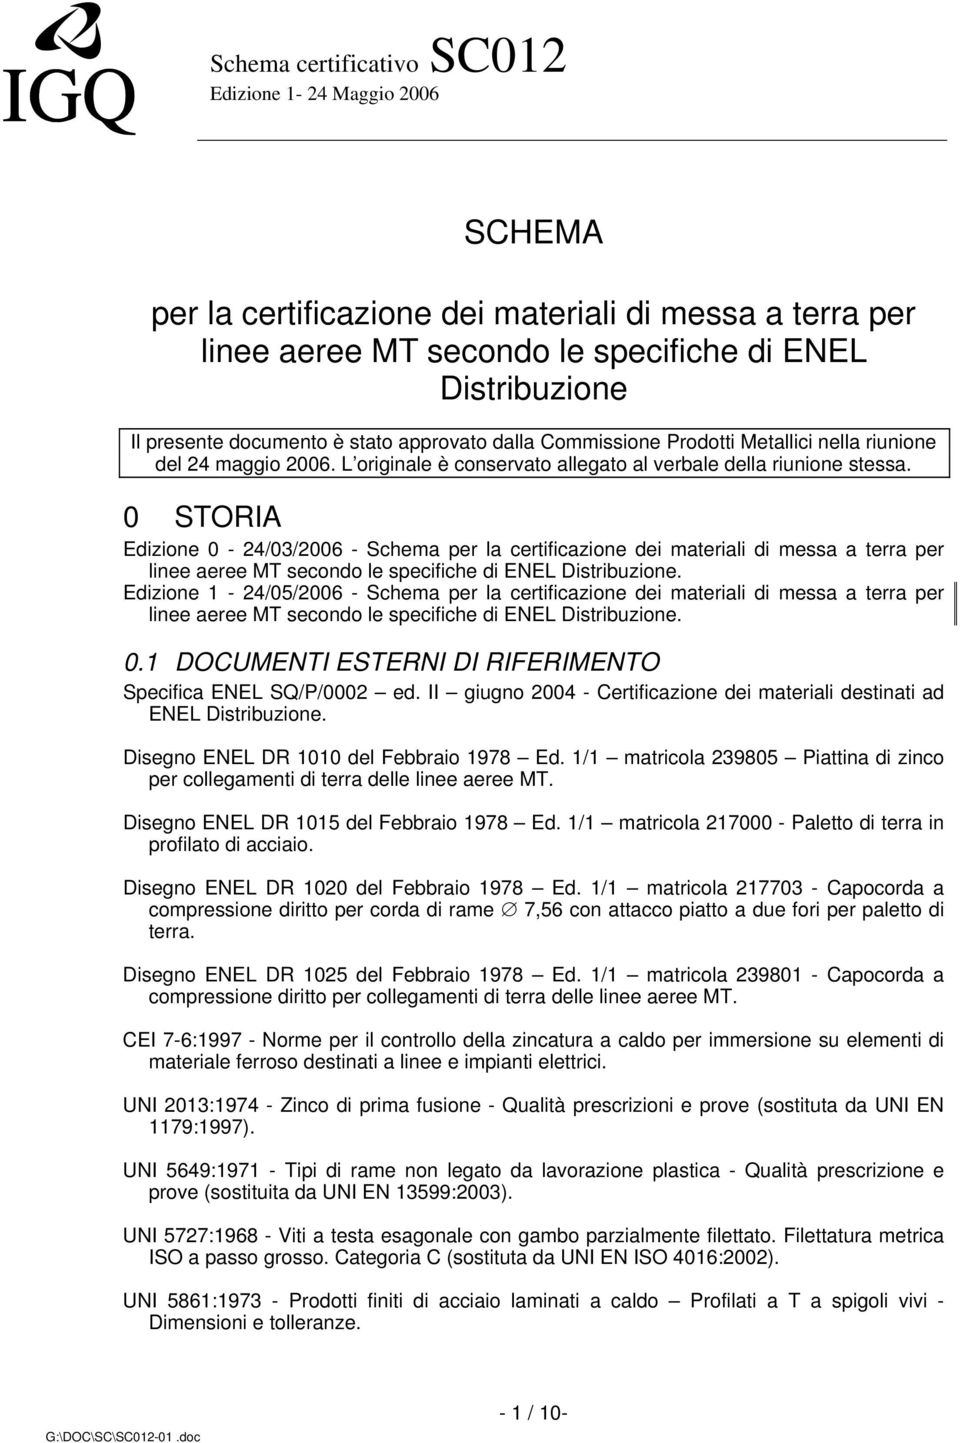 0 STORIA Edizione 0-24/03/2006 - Schema per la certificazione dei materiali di messa a terra per linee aeree MT secondo le specifiche di ENEL Distribuzione.